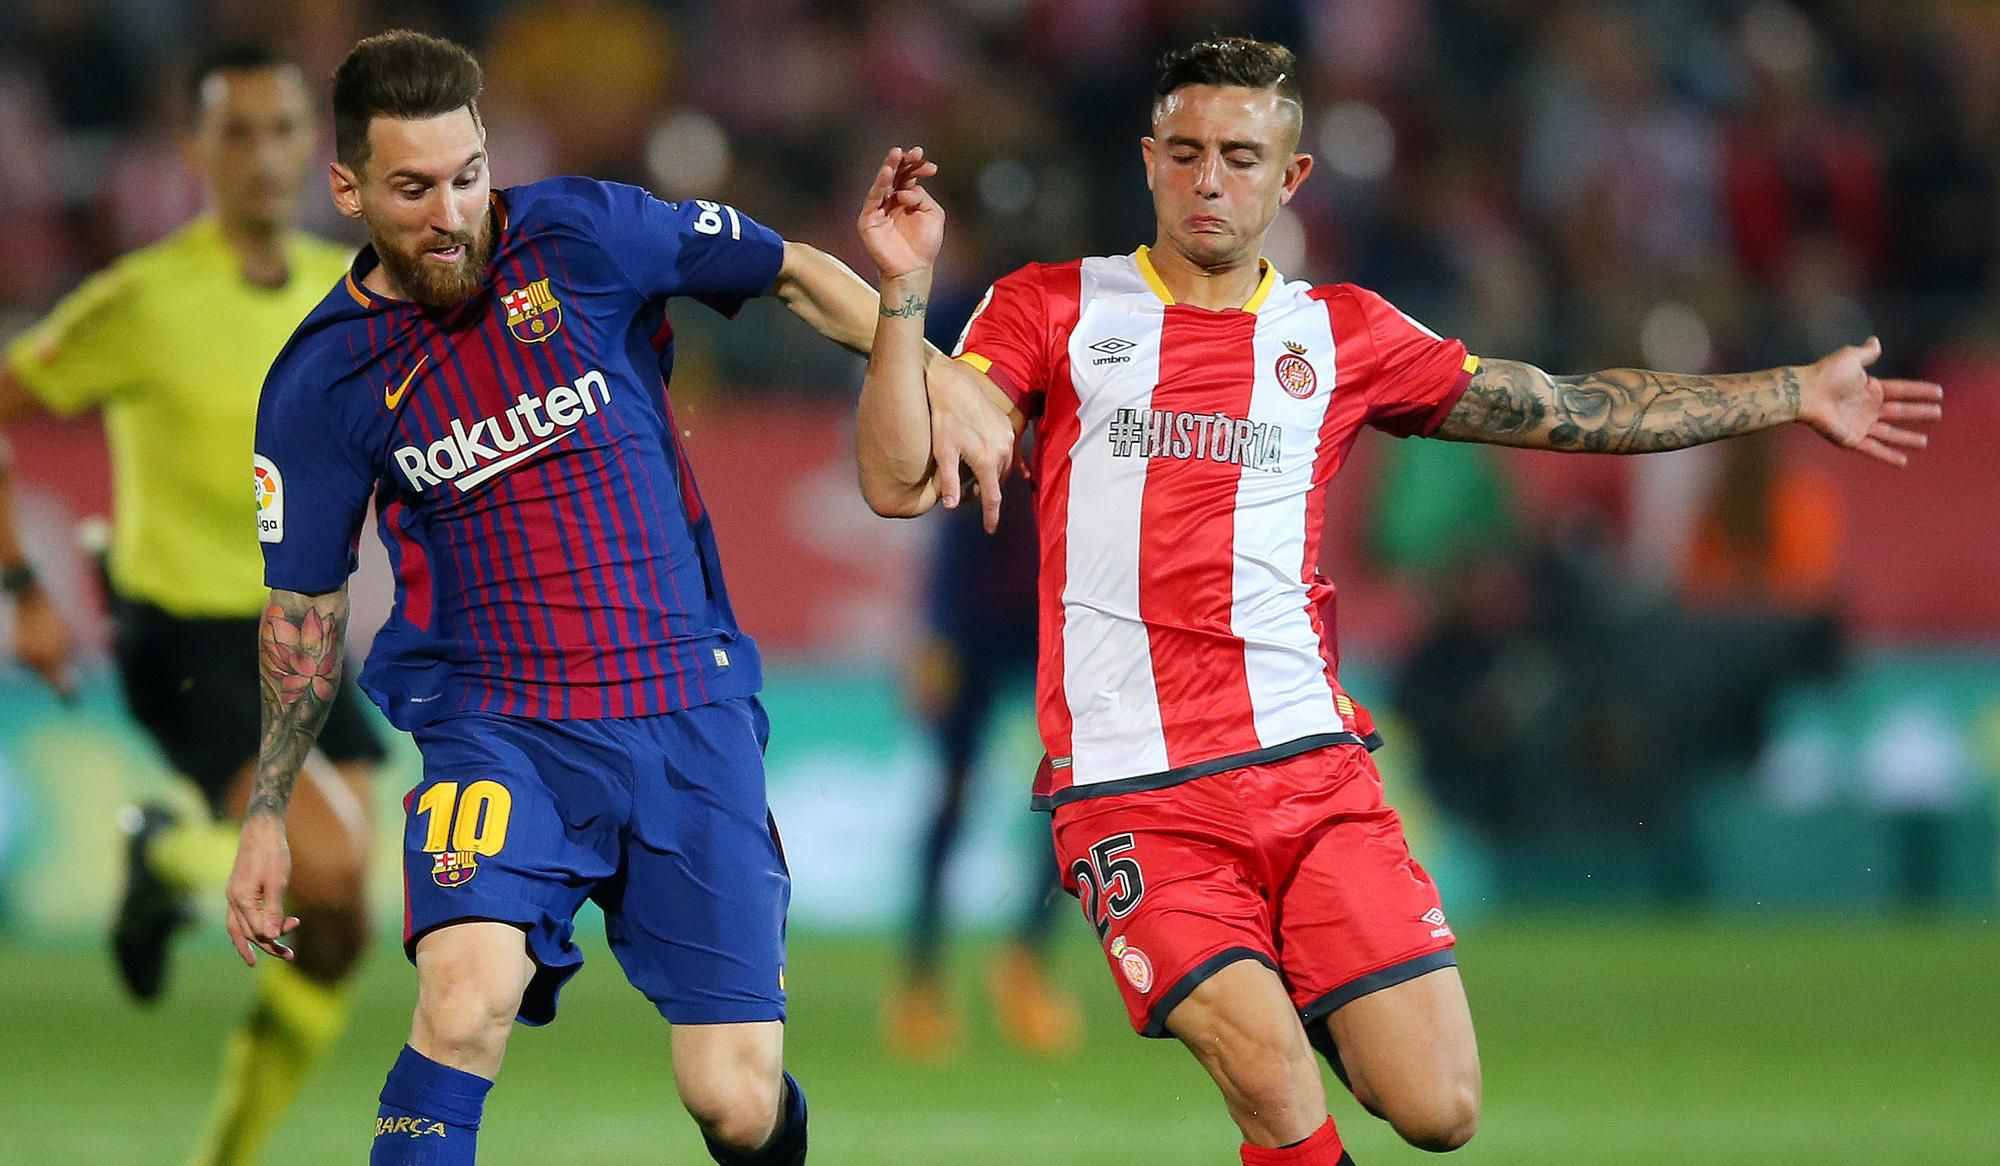 Leo Messi v súboji s Pablom Maffeom